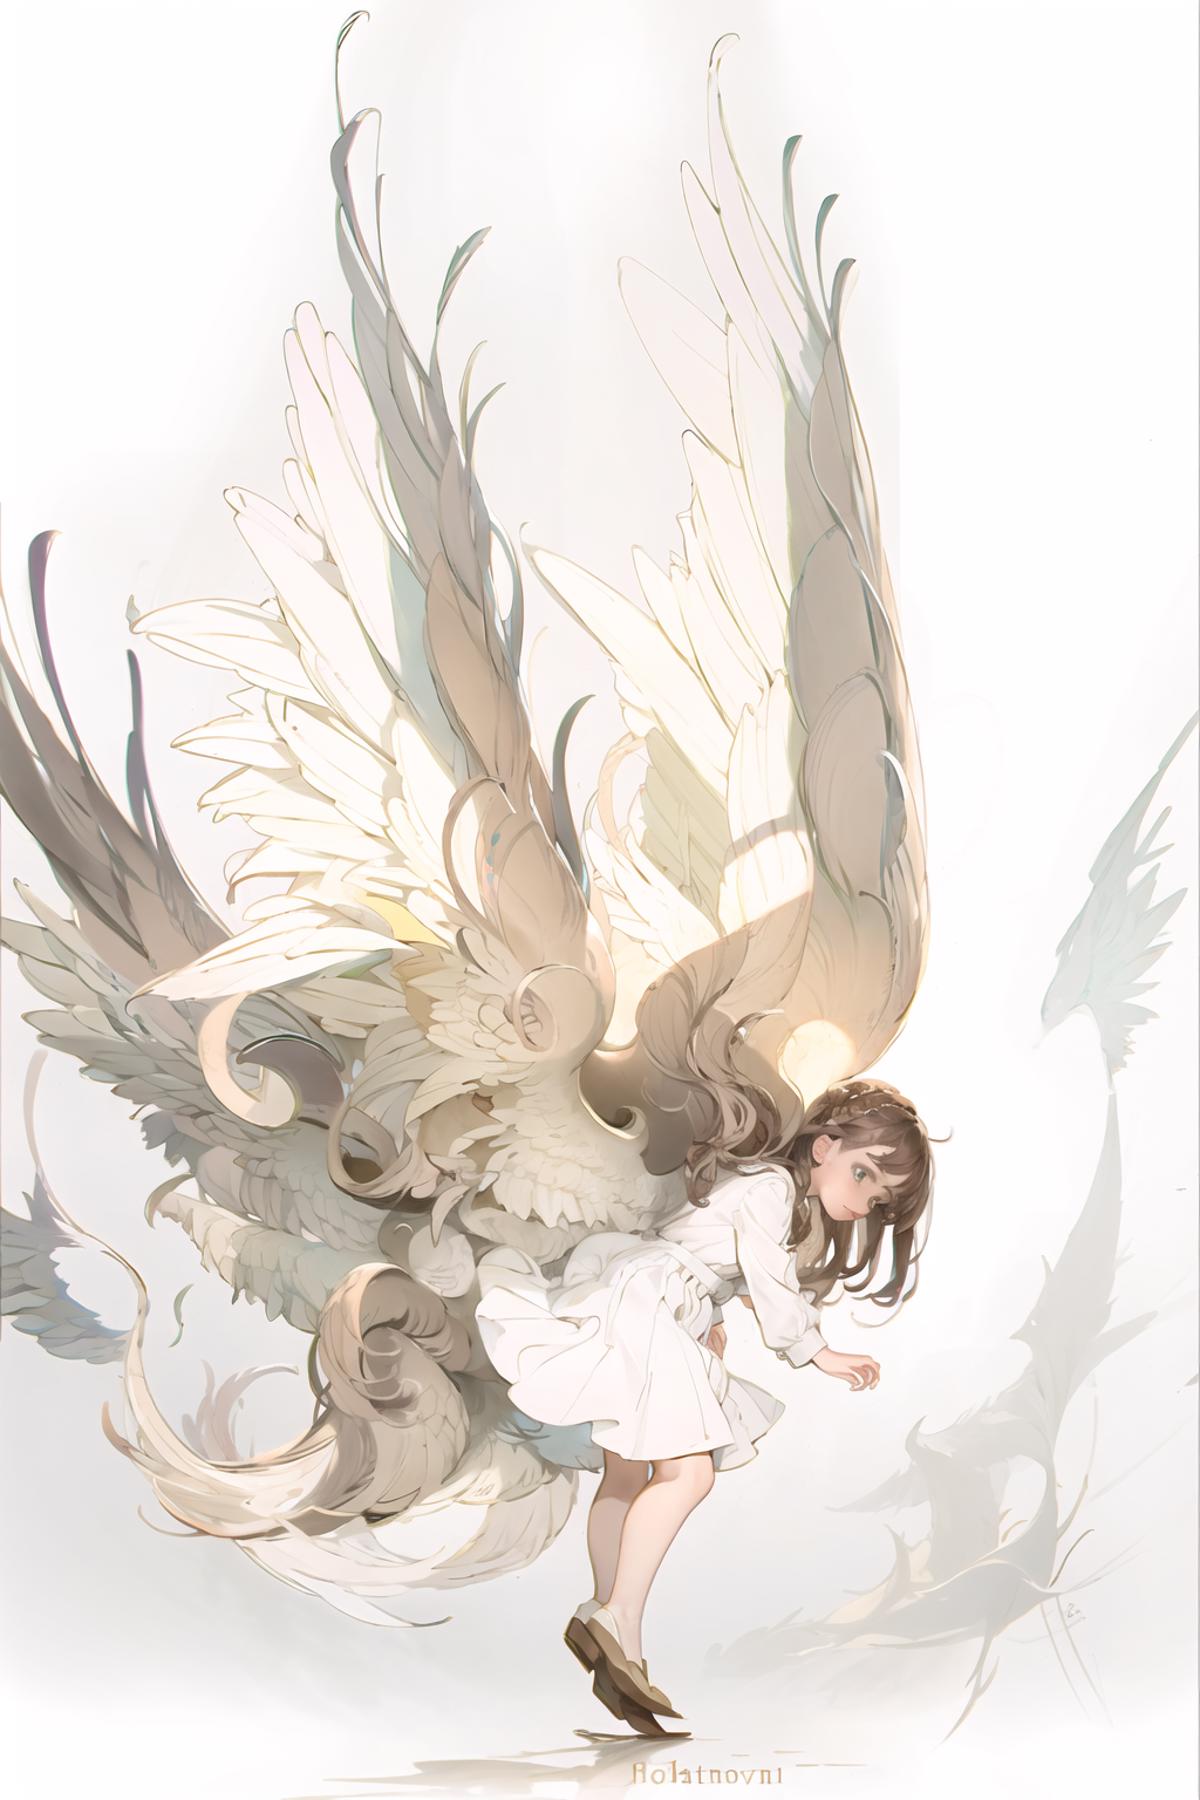 [LoHa] Seraphim/熾天使/セラフ Concept image by L_A_X